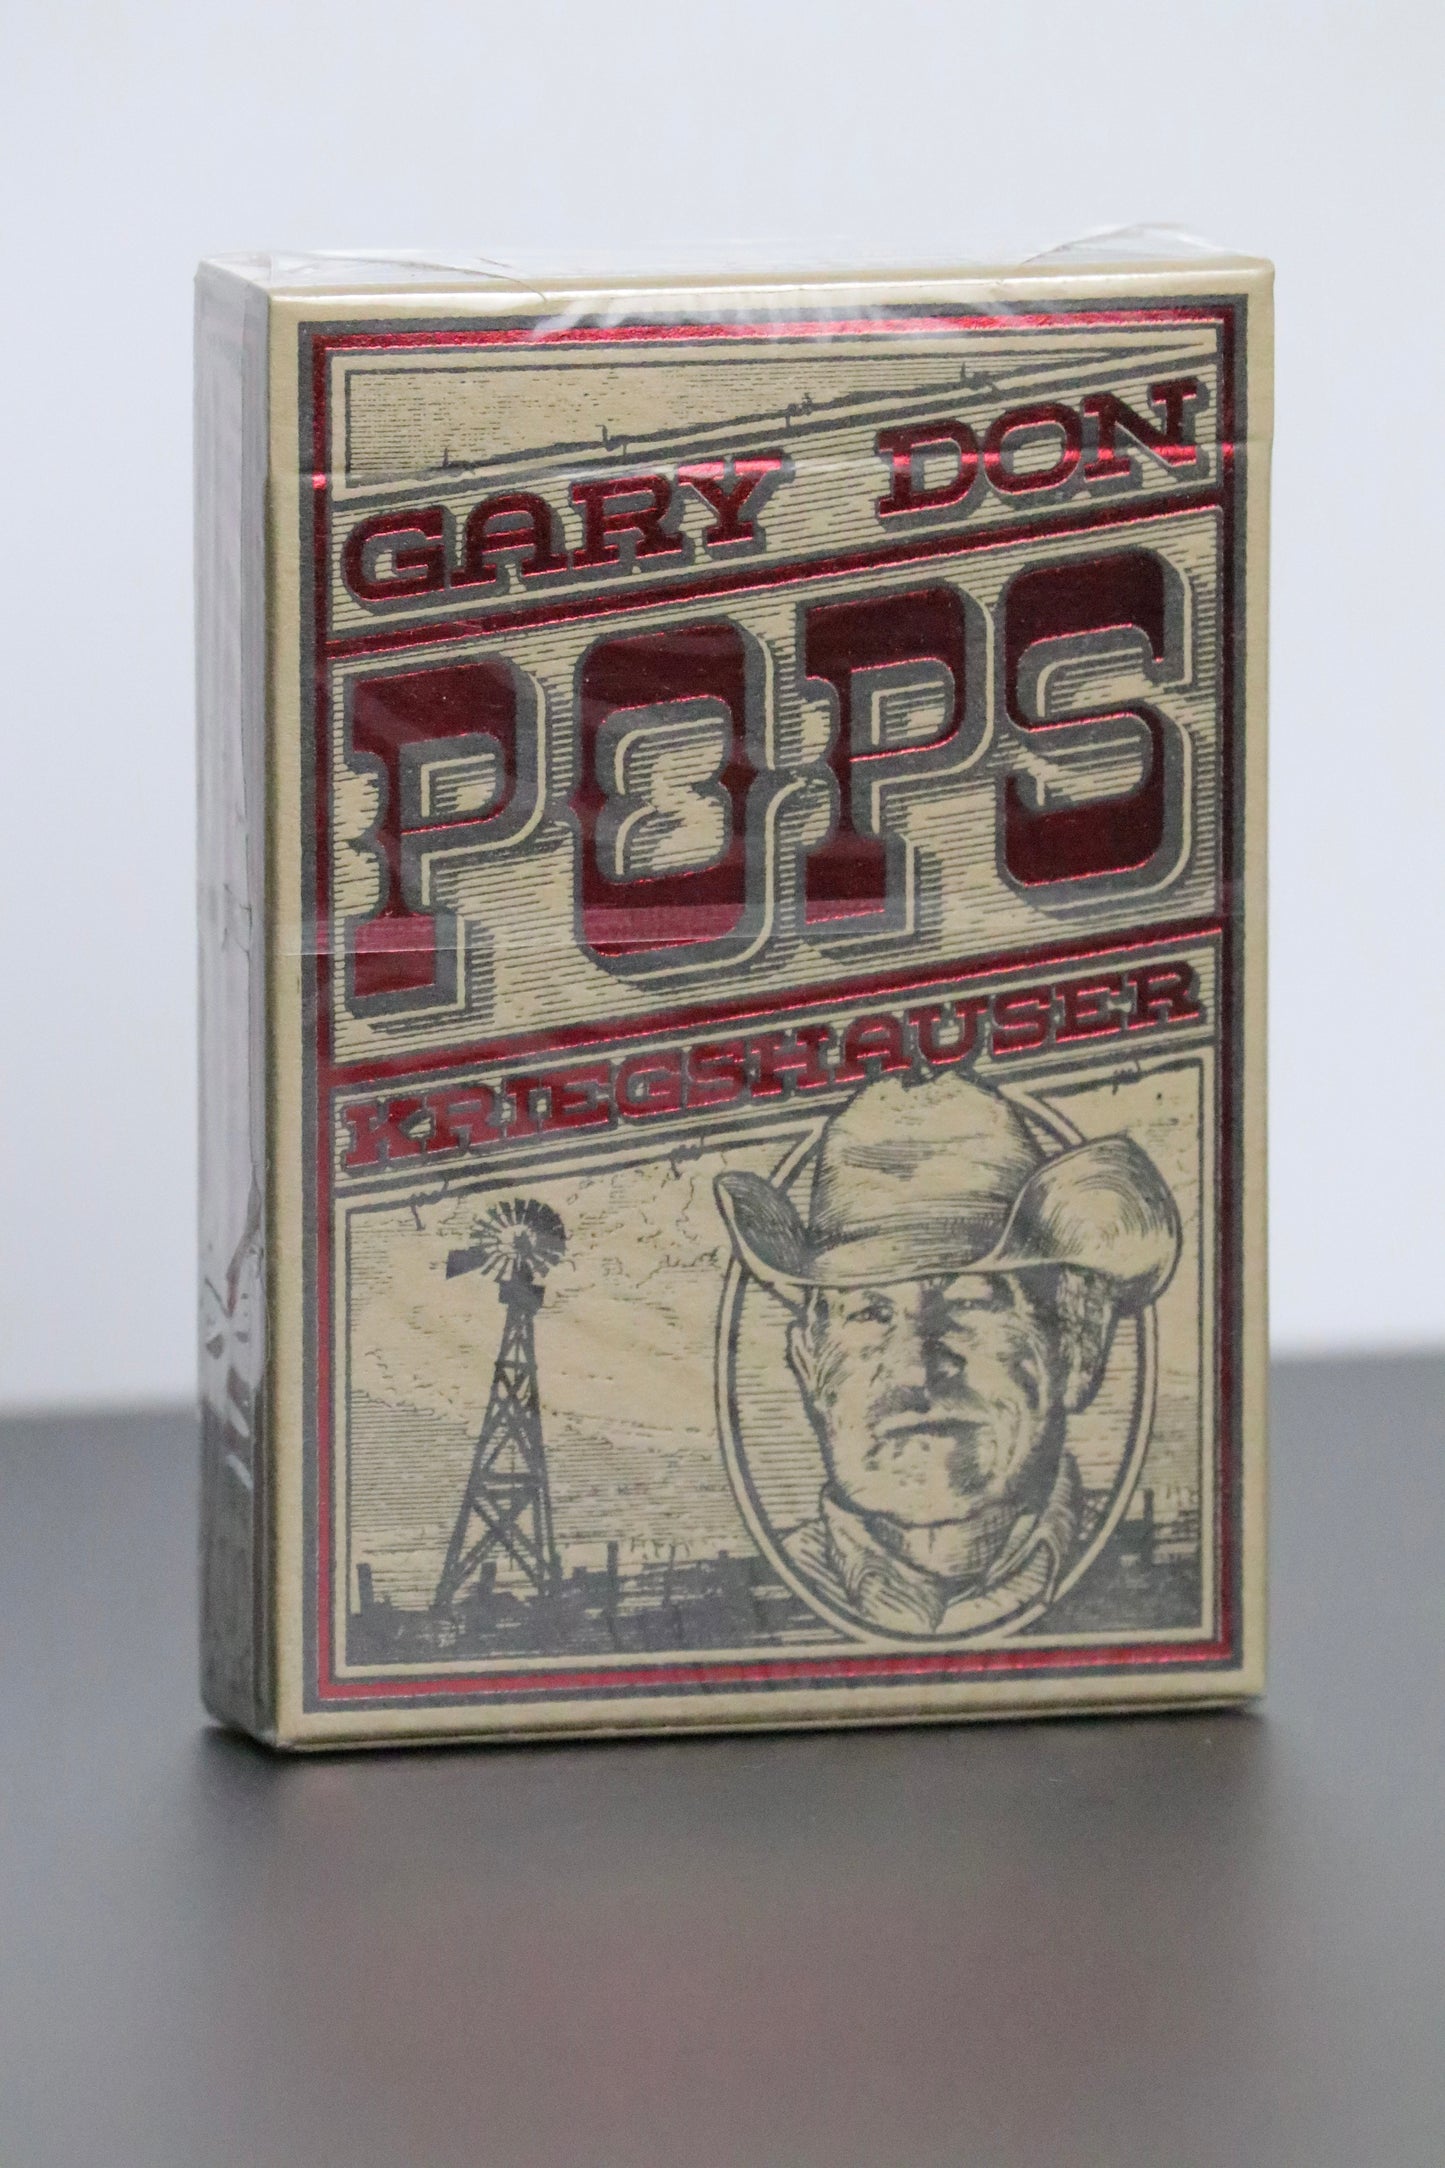 Gary Don Pops Scott Seed Co.